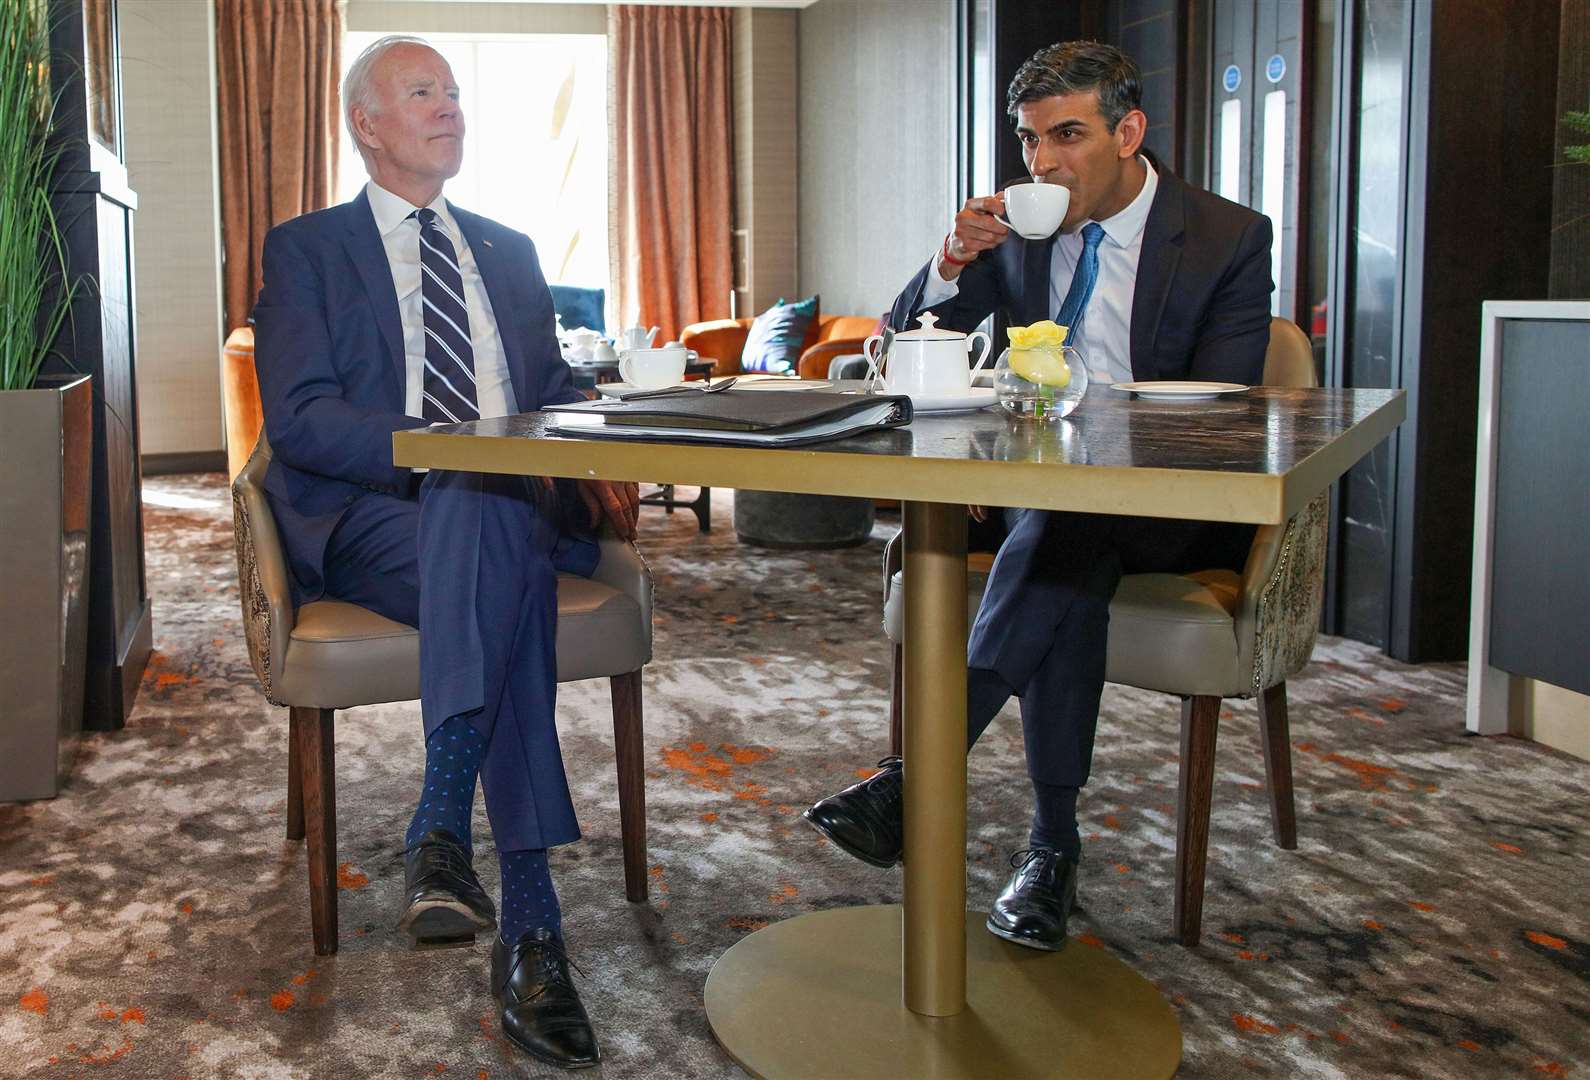 The US leader and Rishi Sunak held talks earlier on Wednesday (Paul Faith/PA)